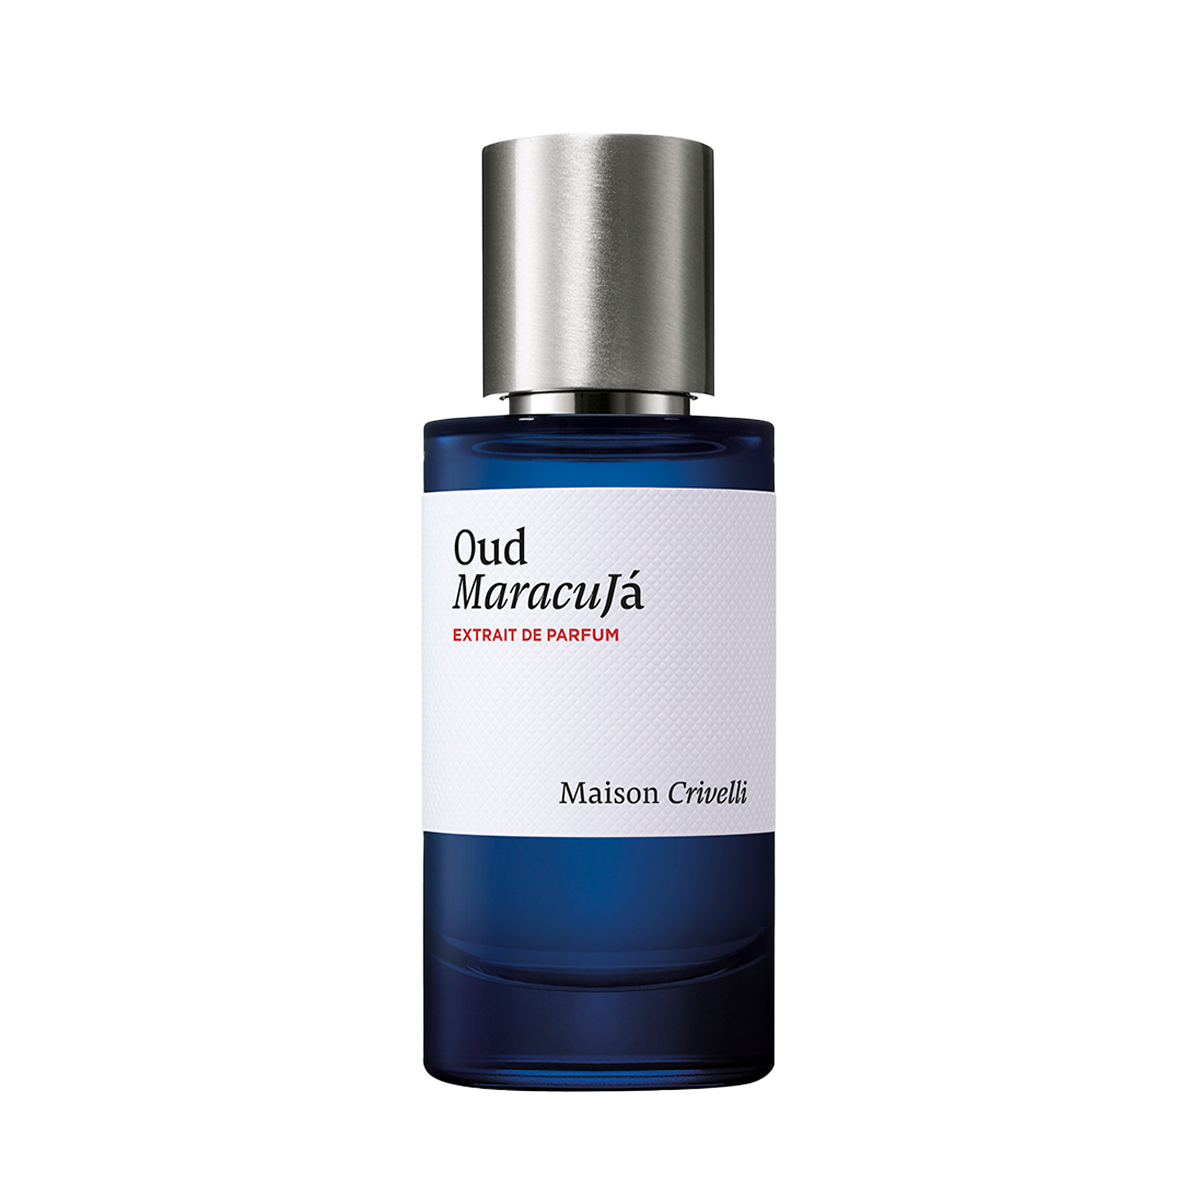 Oud Maracuja <br>Extrait de Parfum 50ml